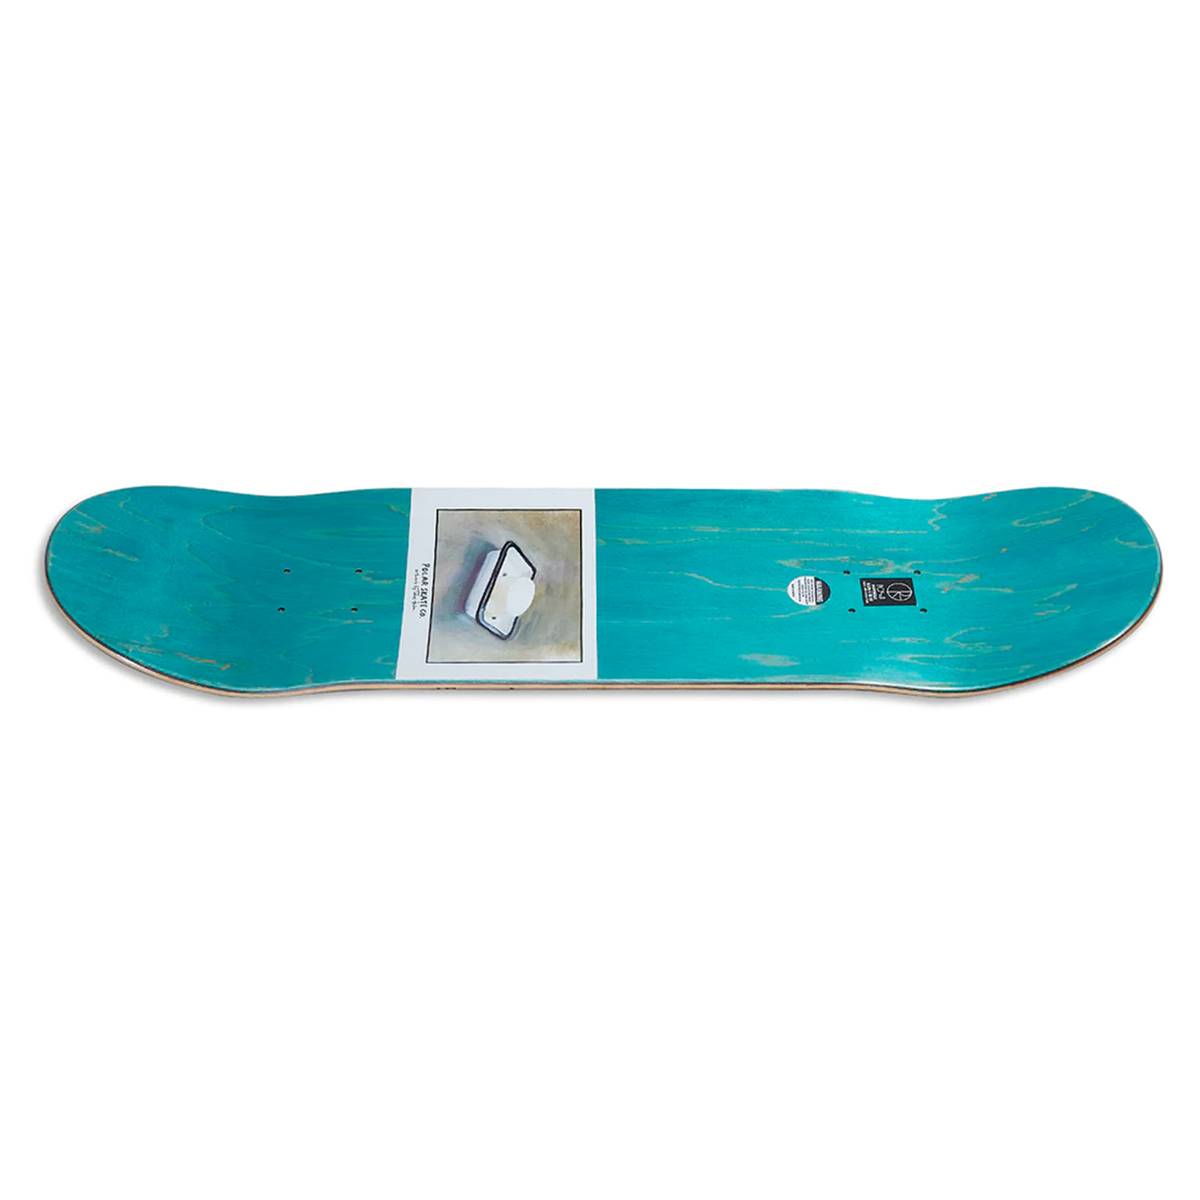 Polar Skateboard Deck Hjalte Halberg Bathtub 8.375"